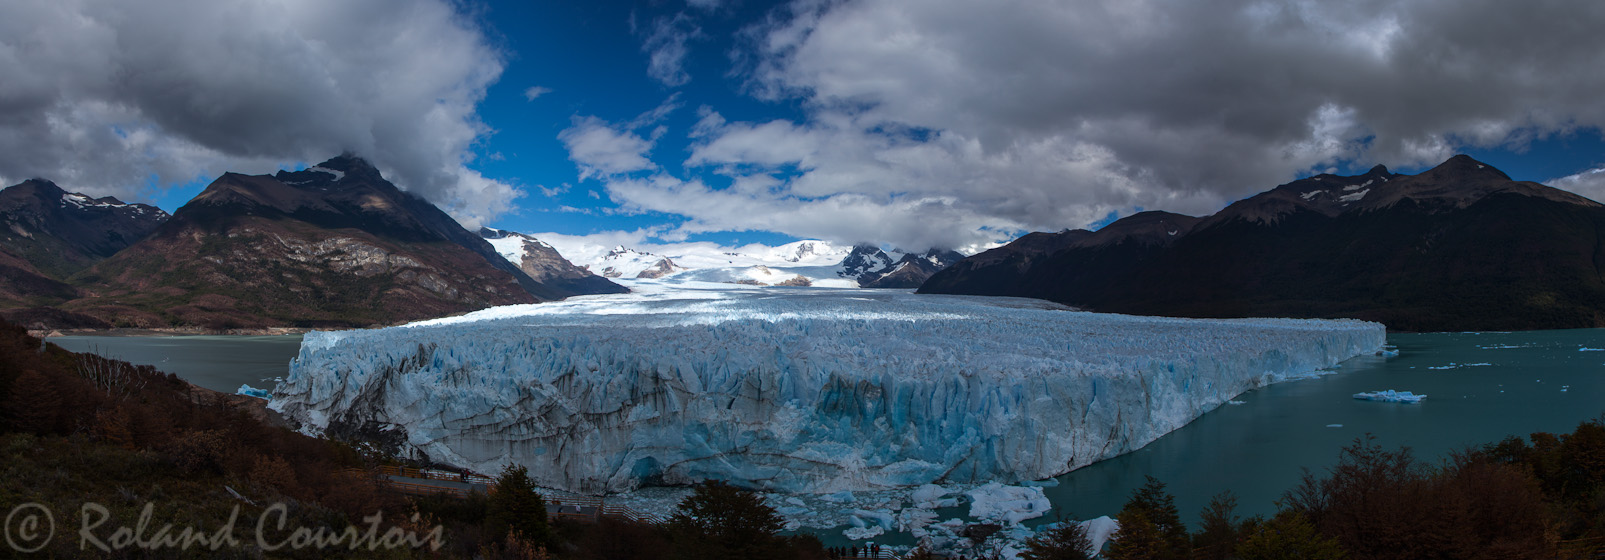 Glacier Perito Moreno: sonfront est long de 5 km.